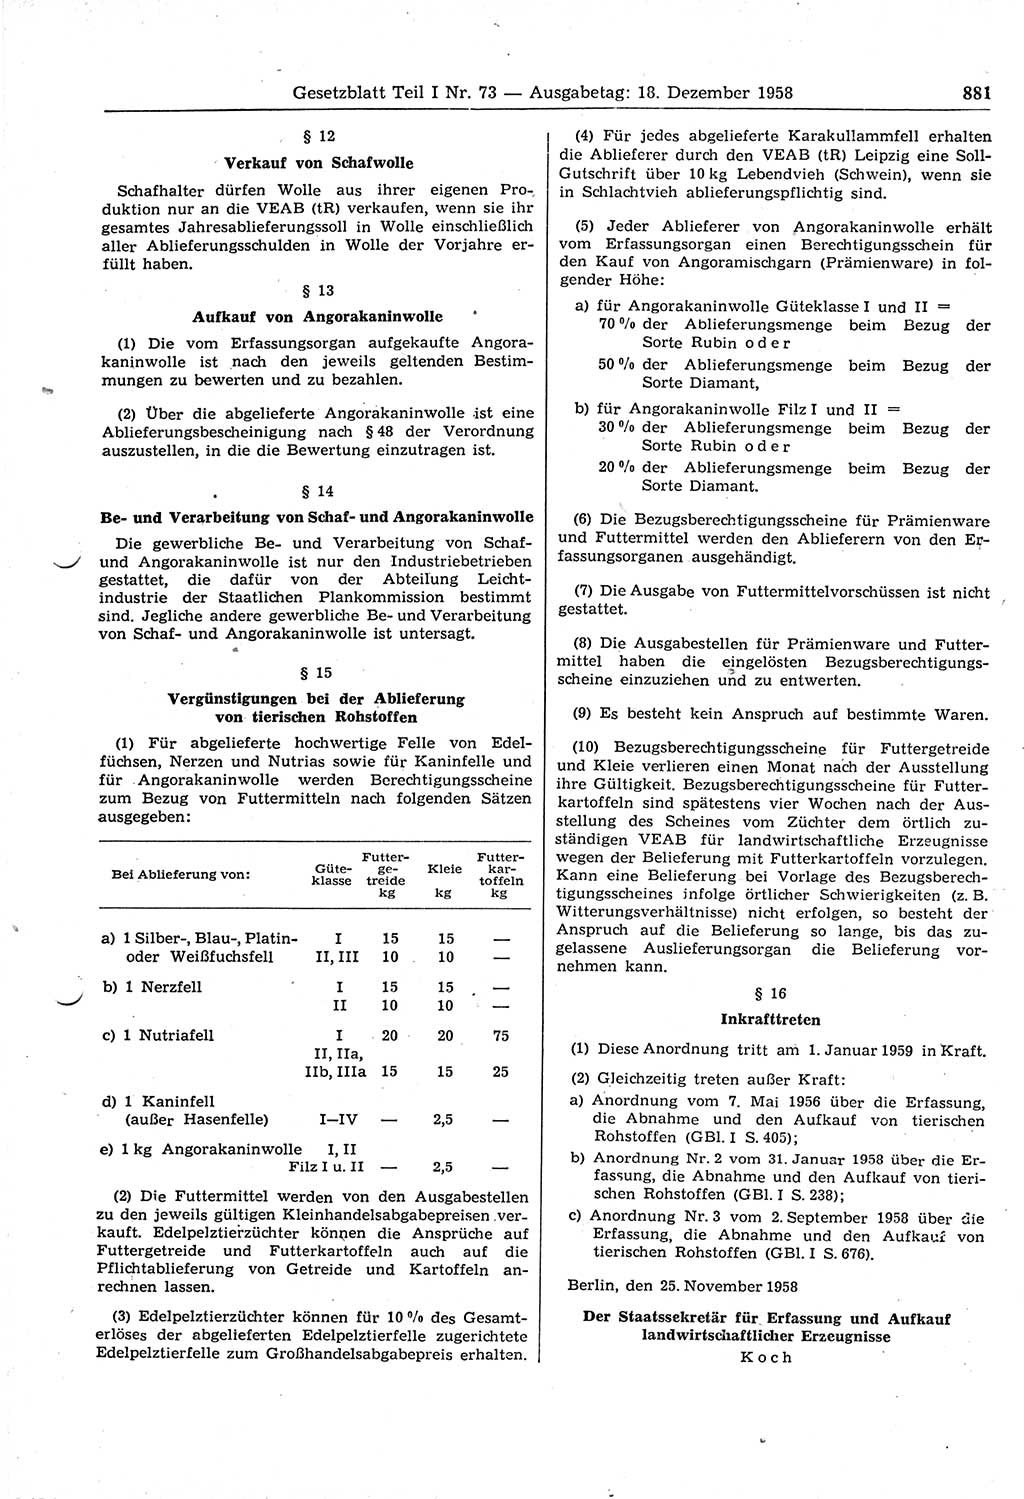 Gesetzblatt (GBl.) der Deutschen Demokratischen Republik (DDR) Teil Ⅰ 1958, Seite 881 (GBl. DDR Ⅰ 1958, S. 881)